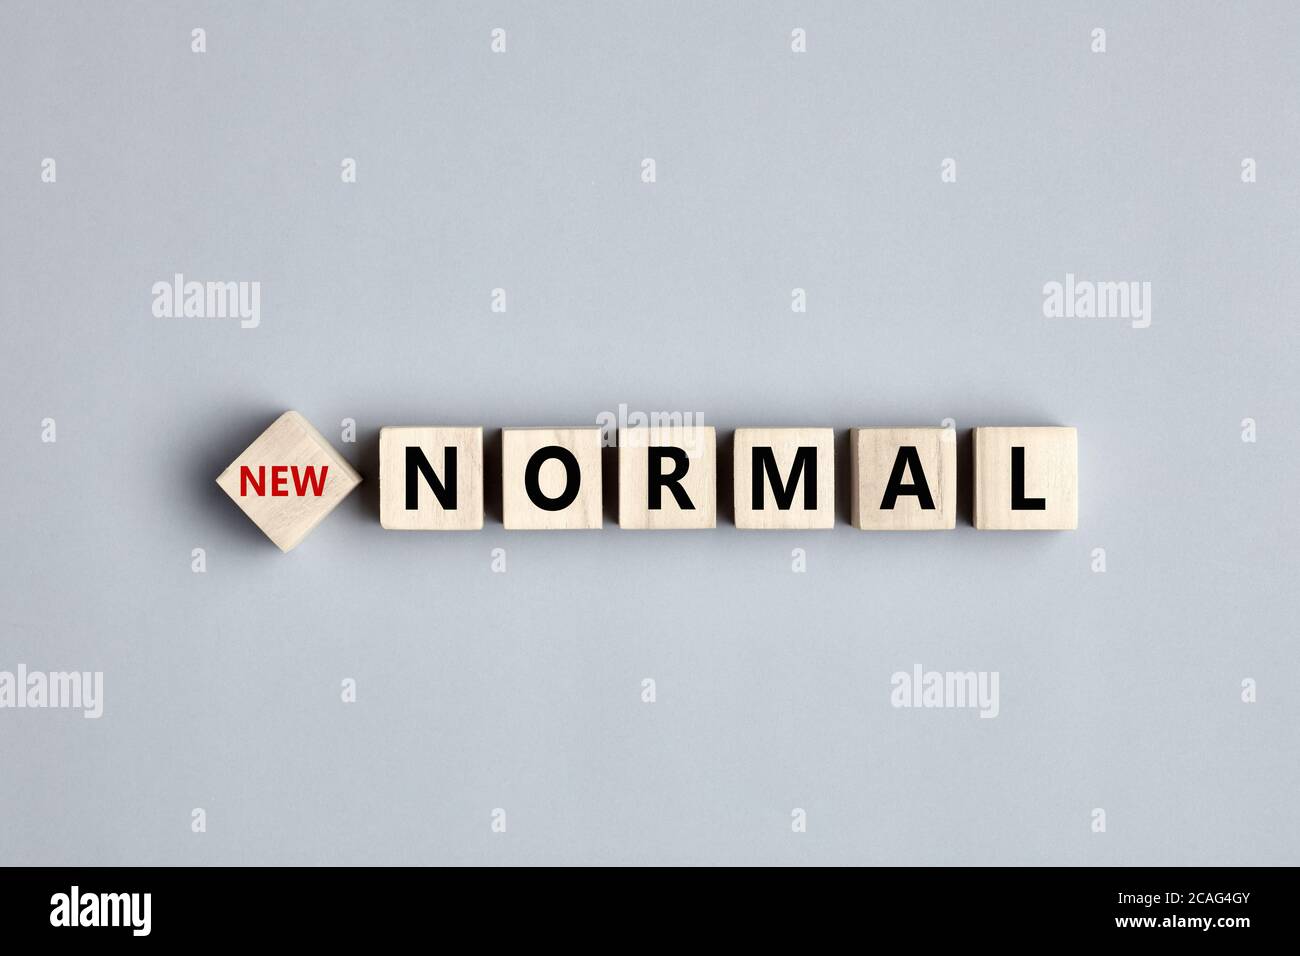 La parola nuova normalità durante i giorni della pandemia del coronavirus è scritta su cubi di legno su sfondo grigio. Foto Stock